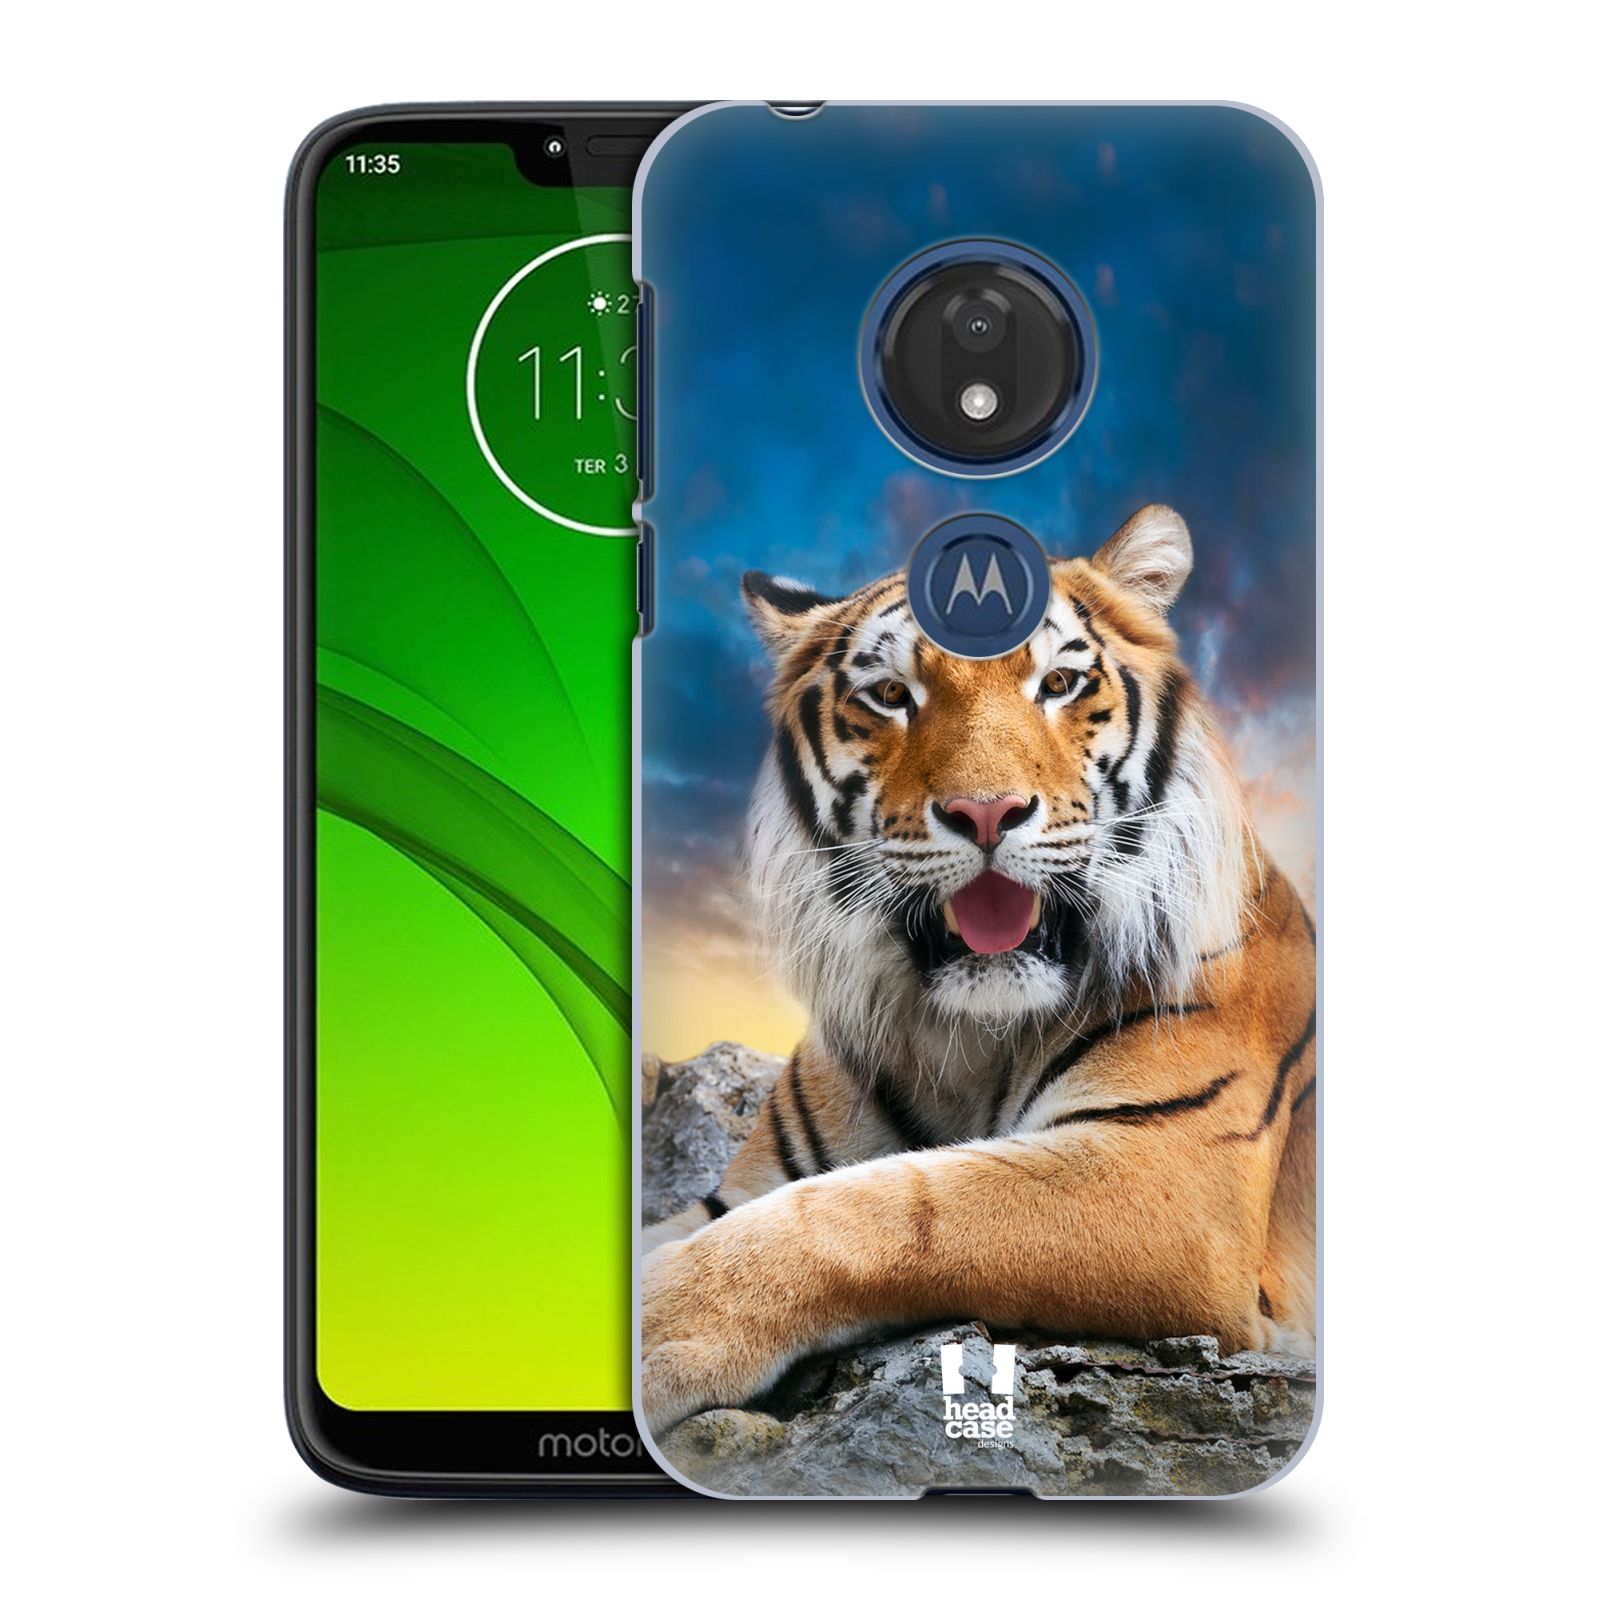  Pouzdro na mobil Motorola Moto G7 Play vzor Divočina, Divoký život a zvířata foto TYGR A NEBE